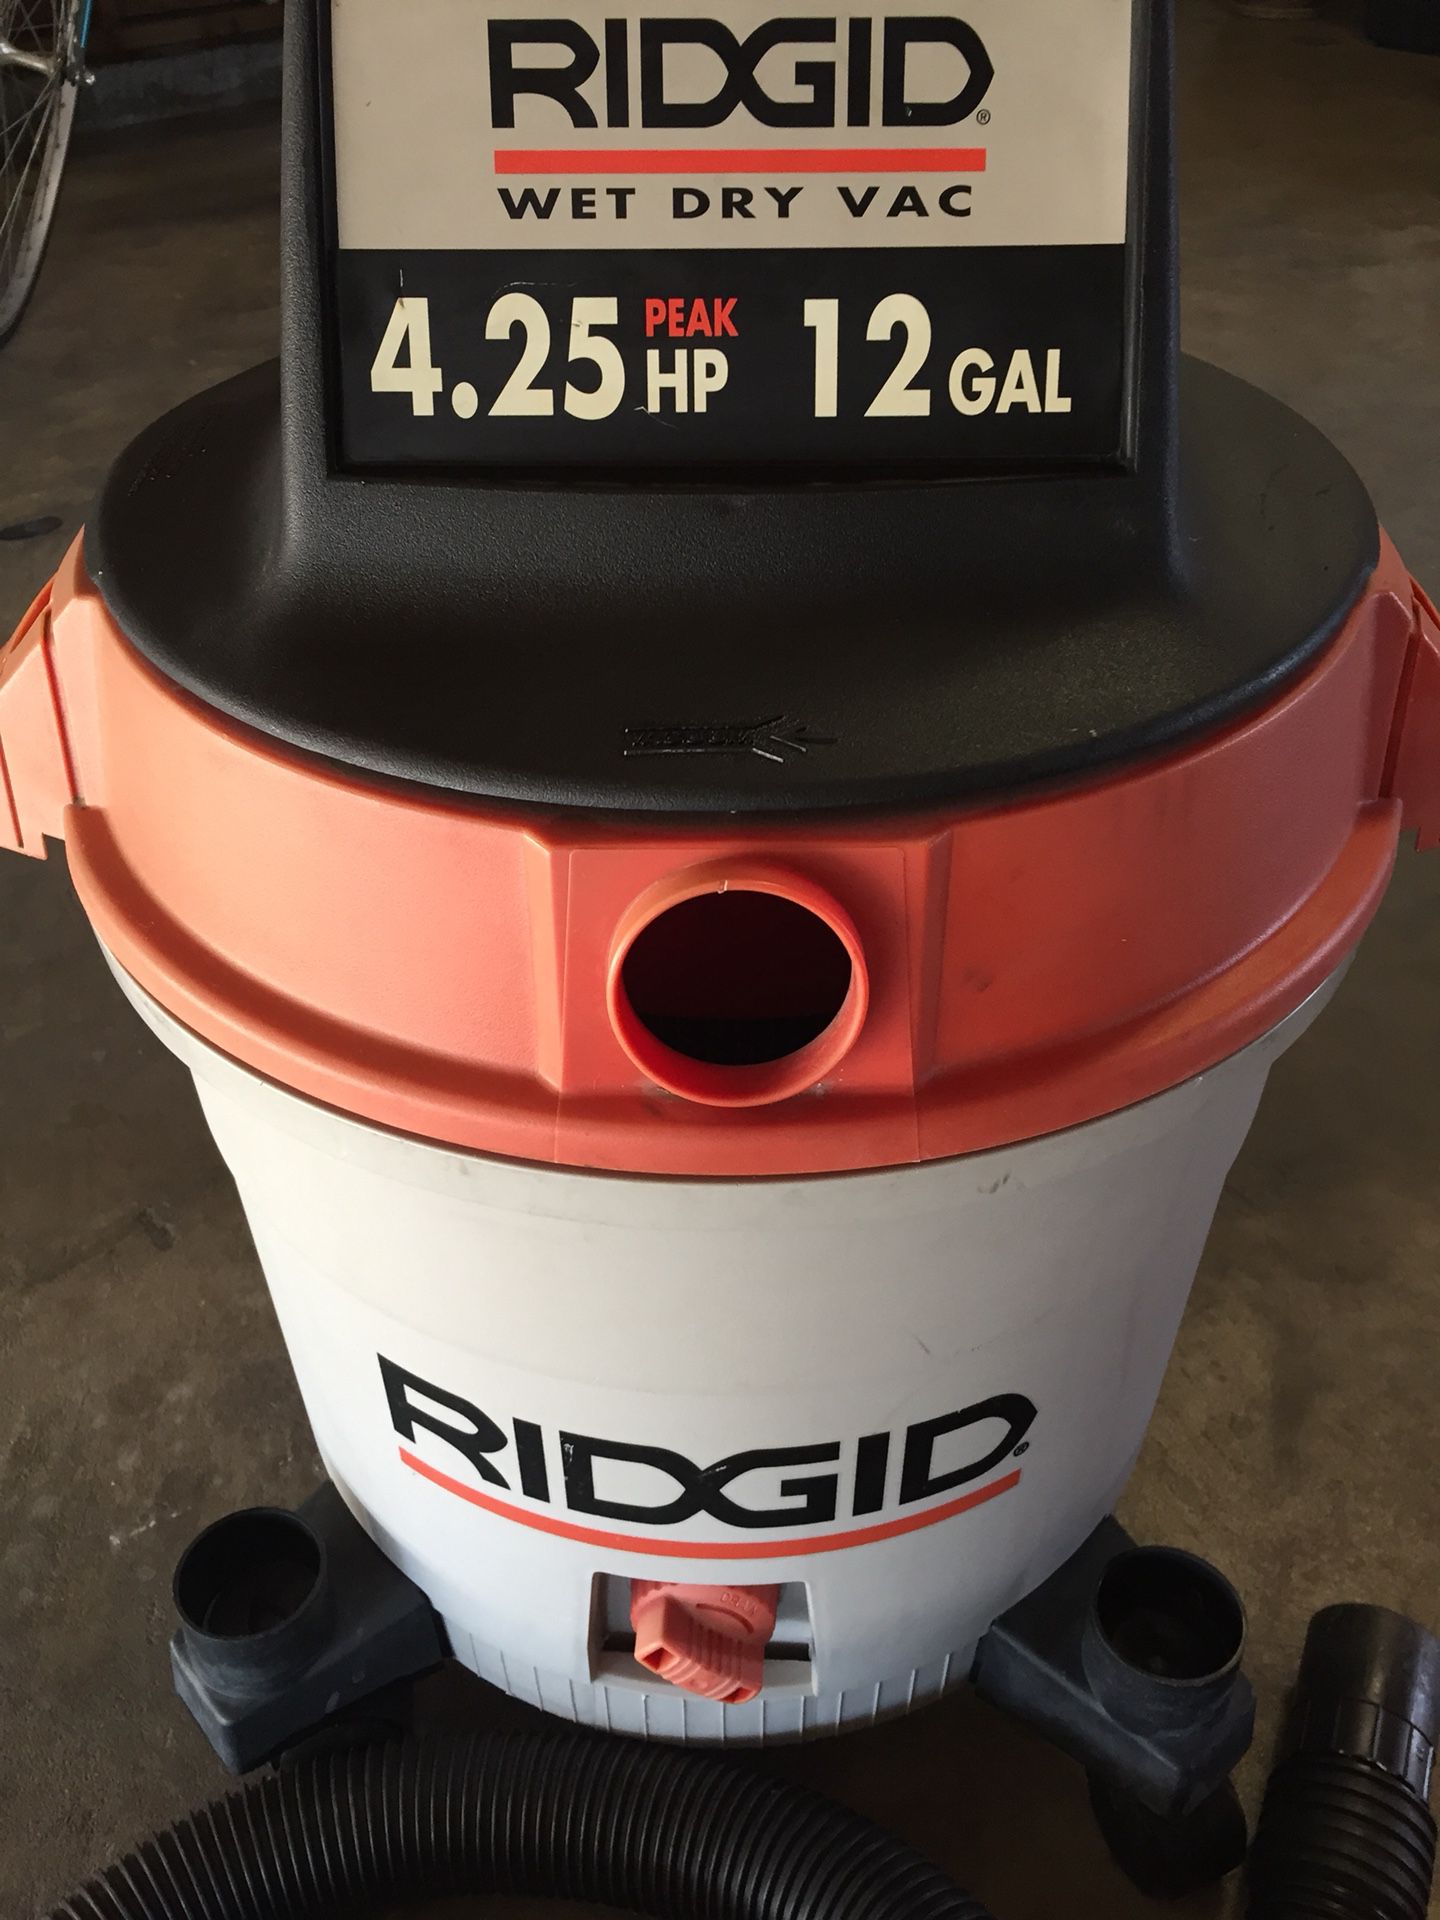 Ridgid Vacuum Hose (LA2570) for Sale in St. Petersburg, FL - OfferUp